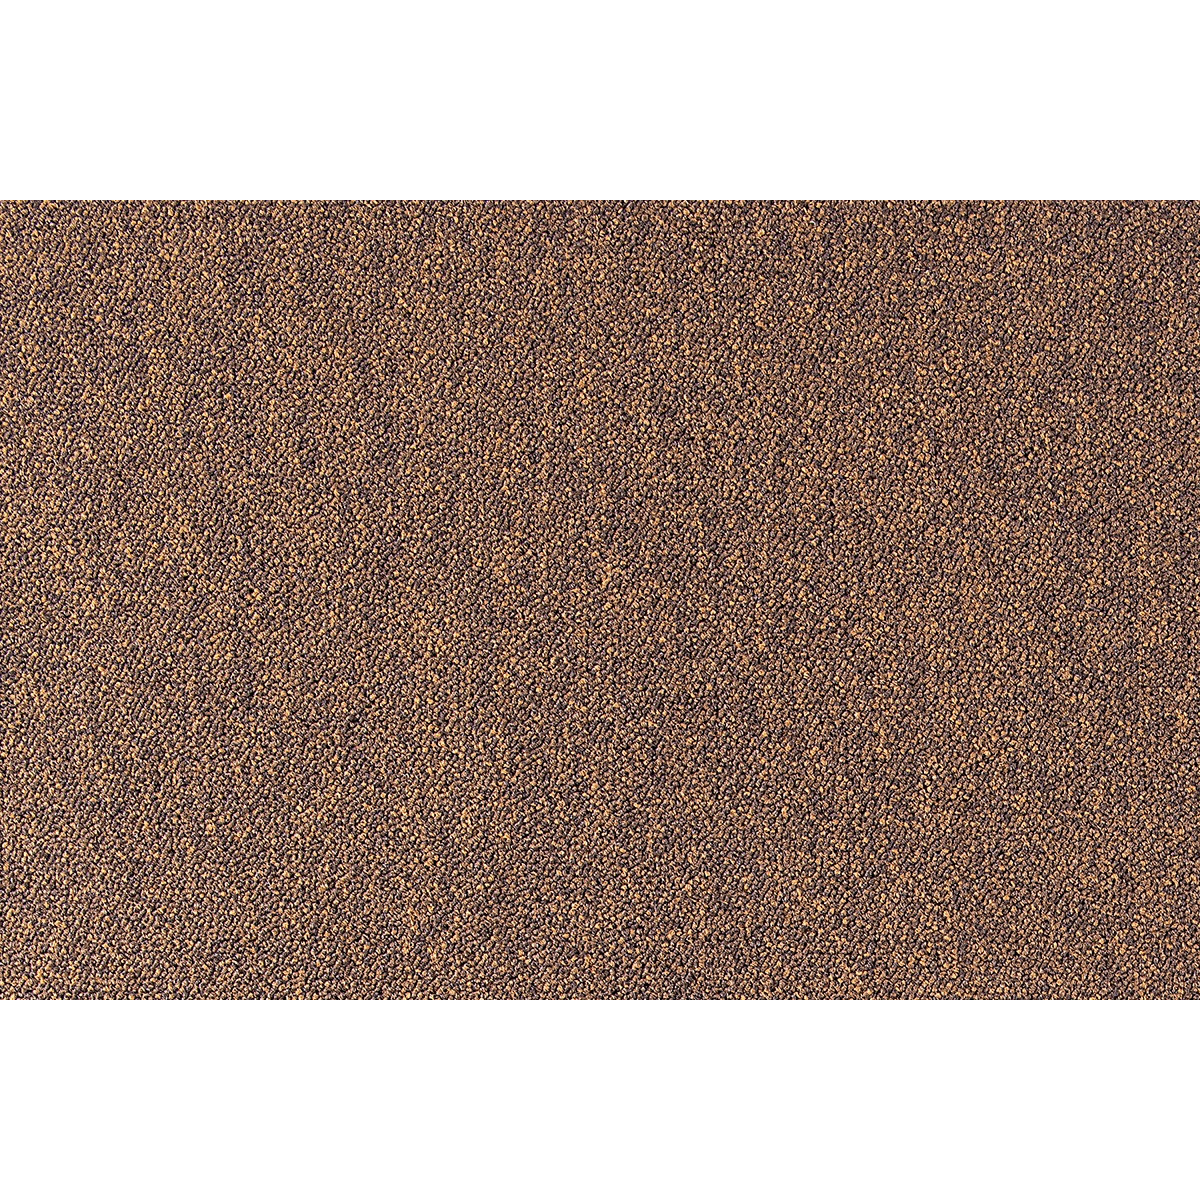 Metrážny koberec Cobalt SDN 64033 - AB svetlo hnedý, záťažový